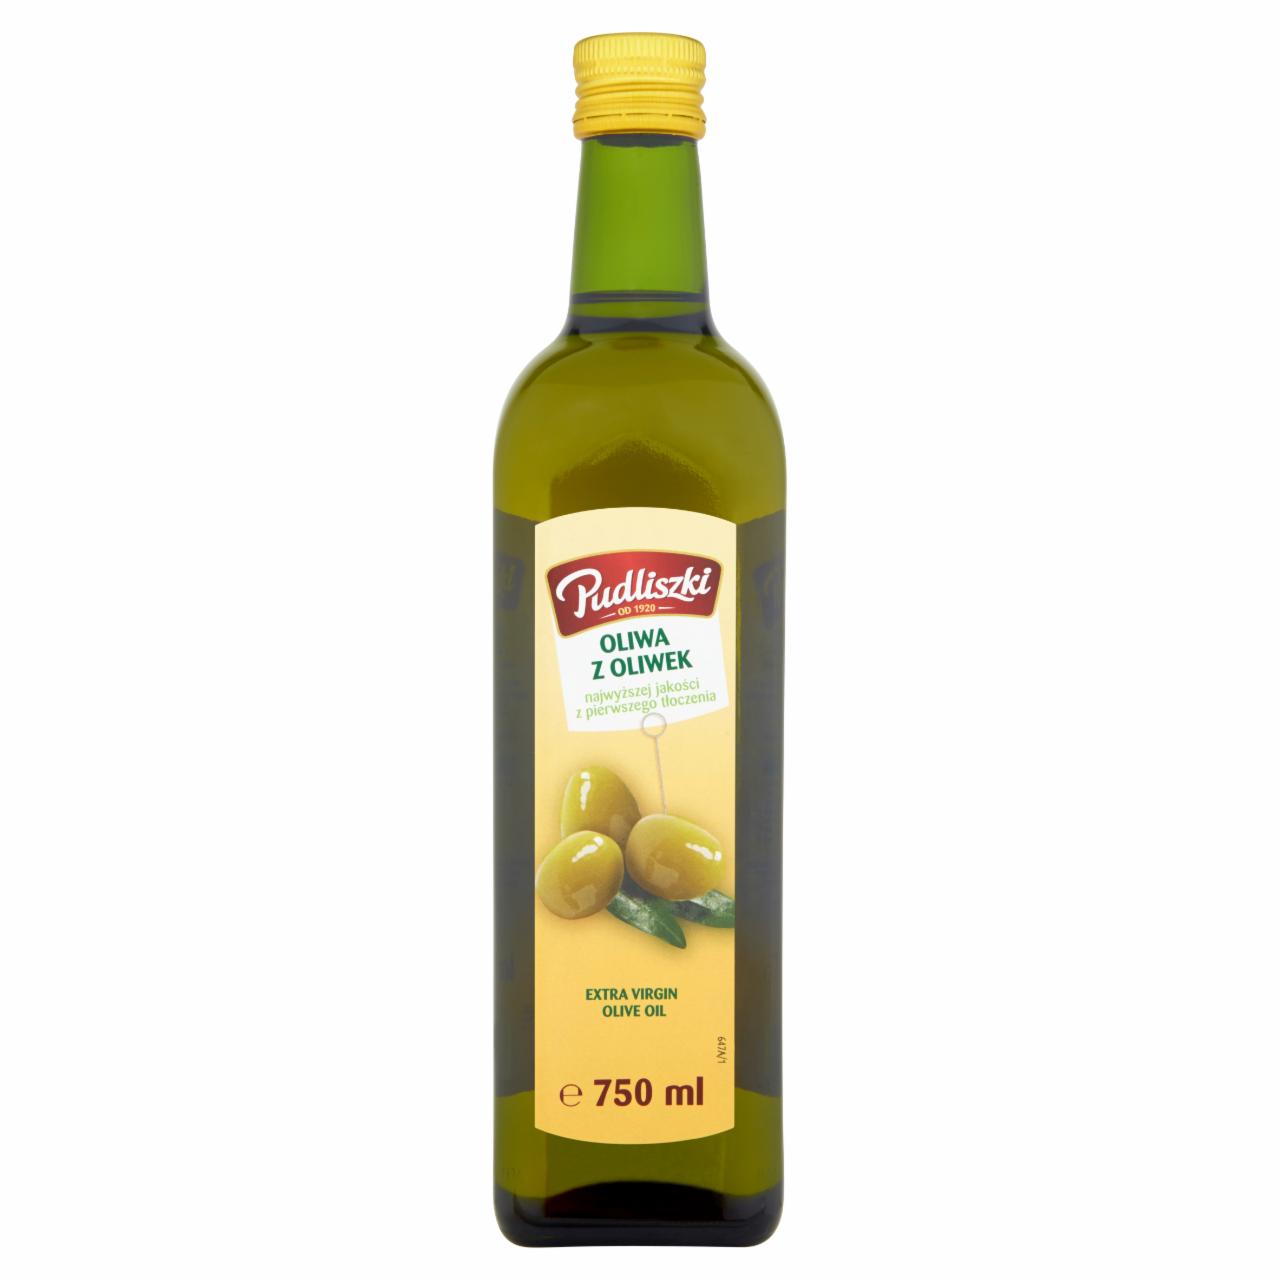 Zdjęcia - Pudliszki Oliwa z oliwek najwyższej jakości z pierwszego tłoczenia 750 ml